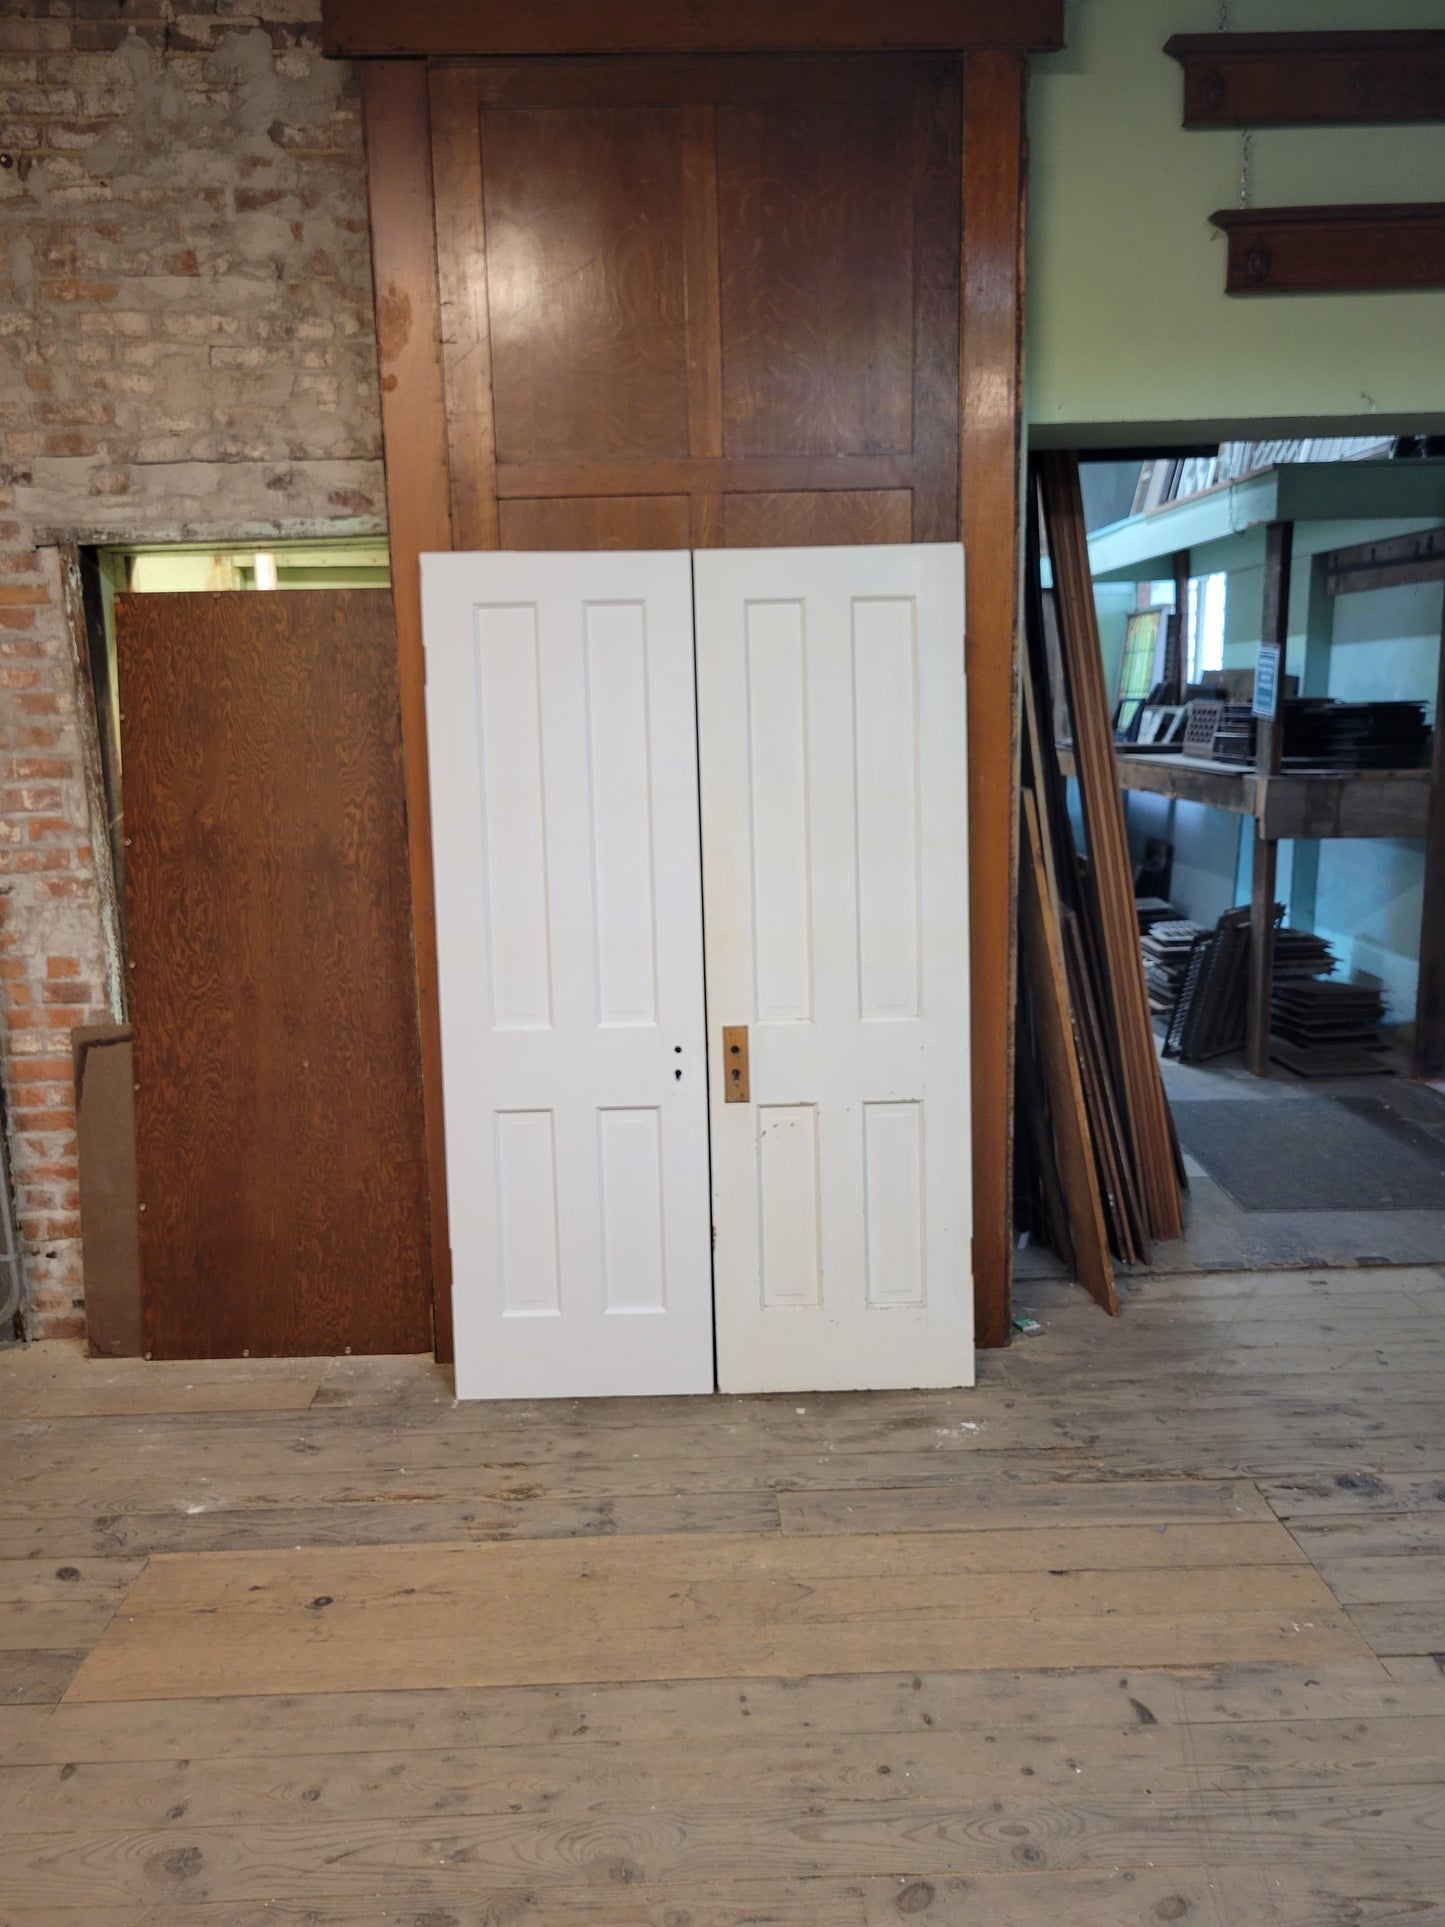 Victorian 48" Wide Antique White Five Panel Doors, Narrow Set of Solid Wood Double Doors #5